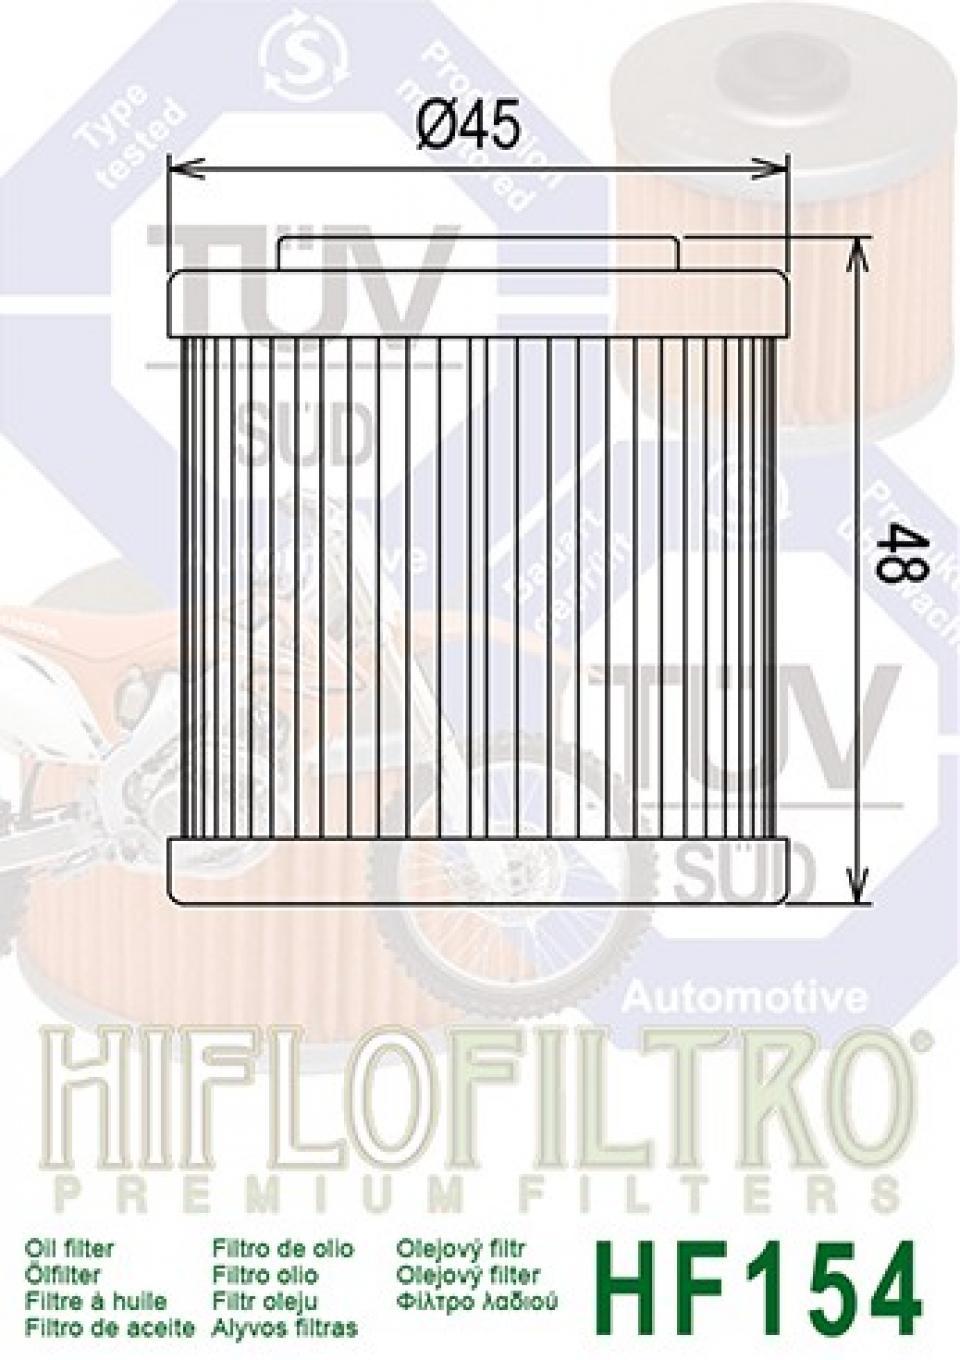 Filtre à huile Hiflo Filtro pour Moto Husqvarna 610 SMS 2002-2010 Neuf